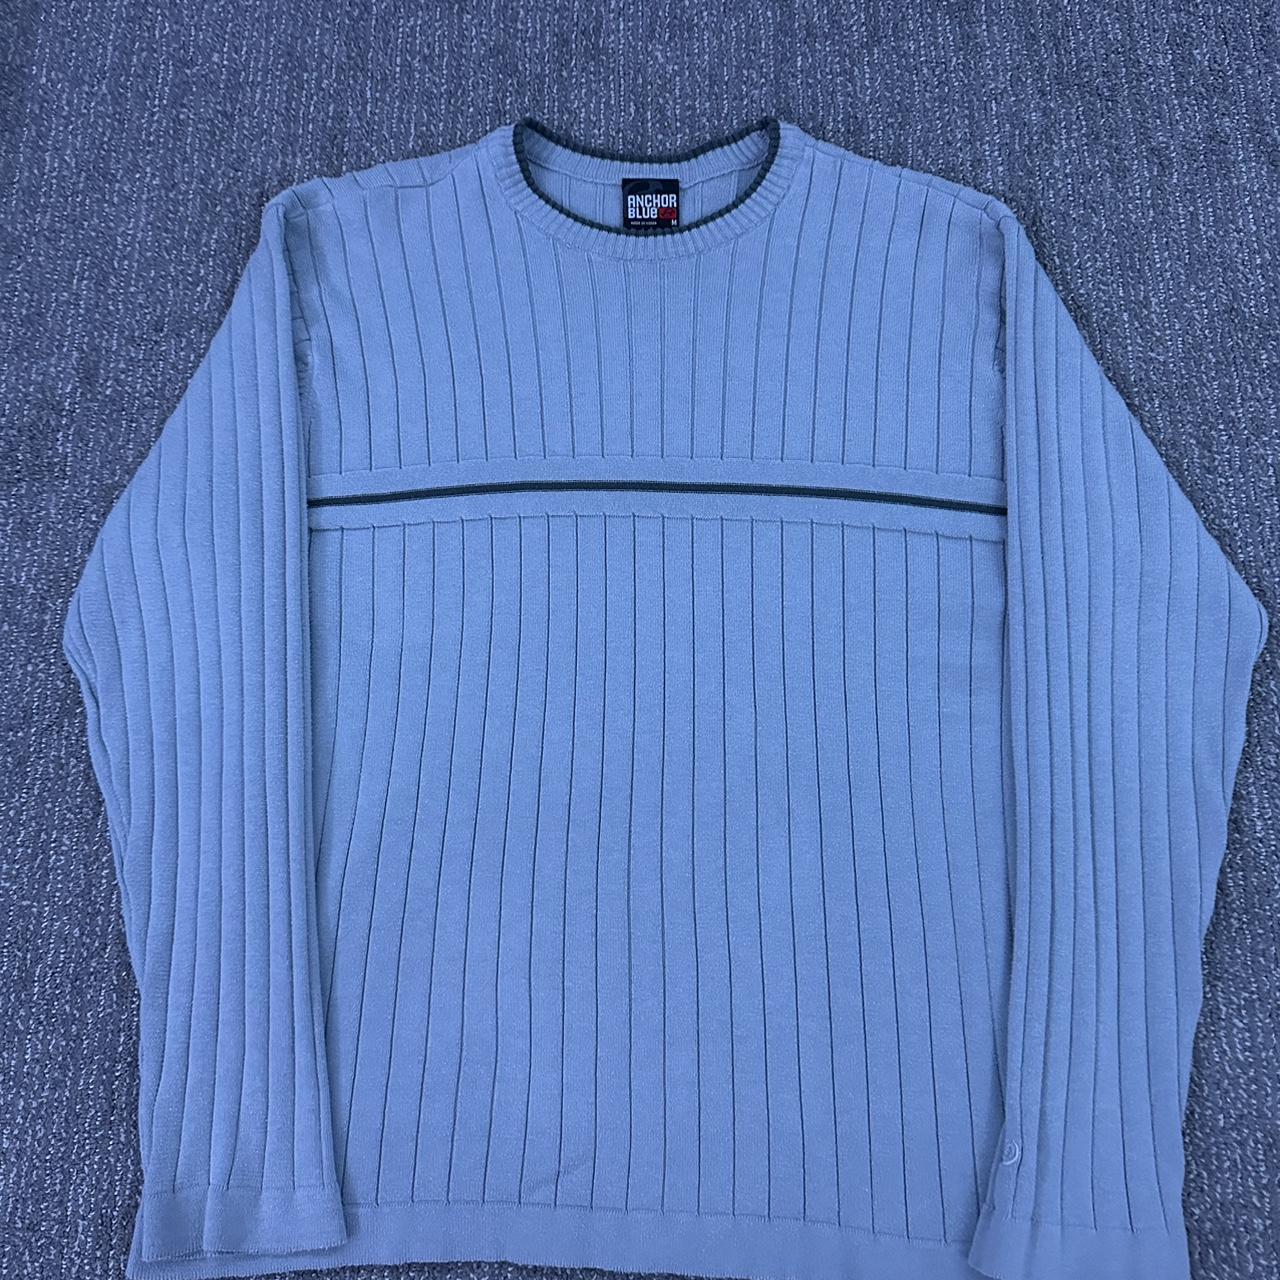 Anchor Blue sweater - Depop